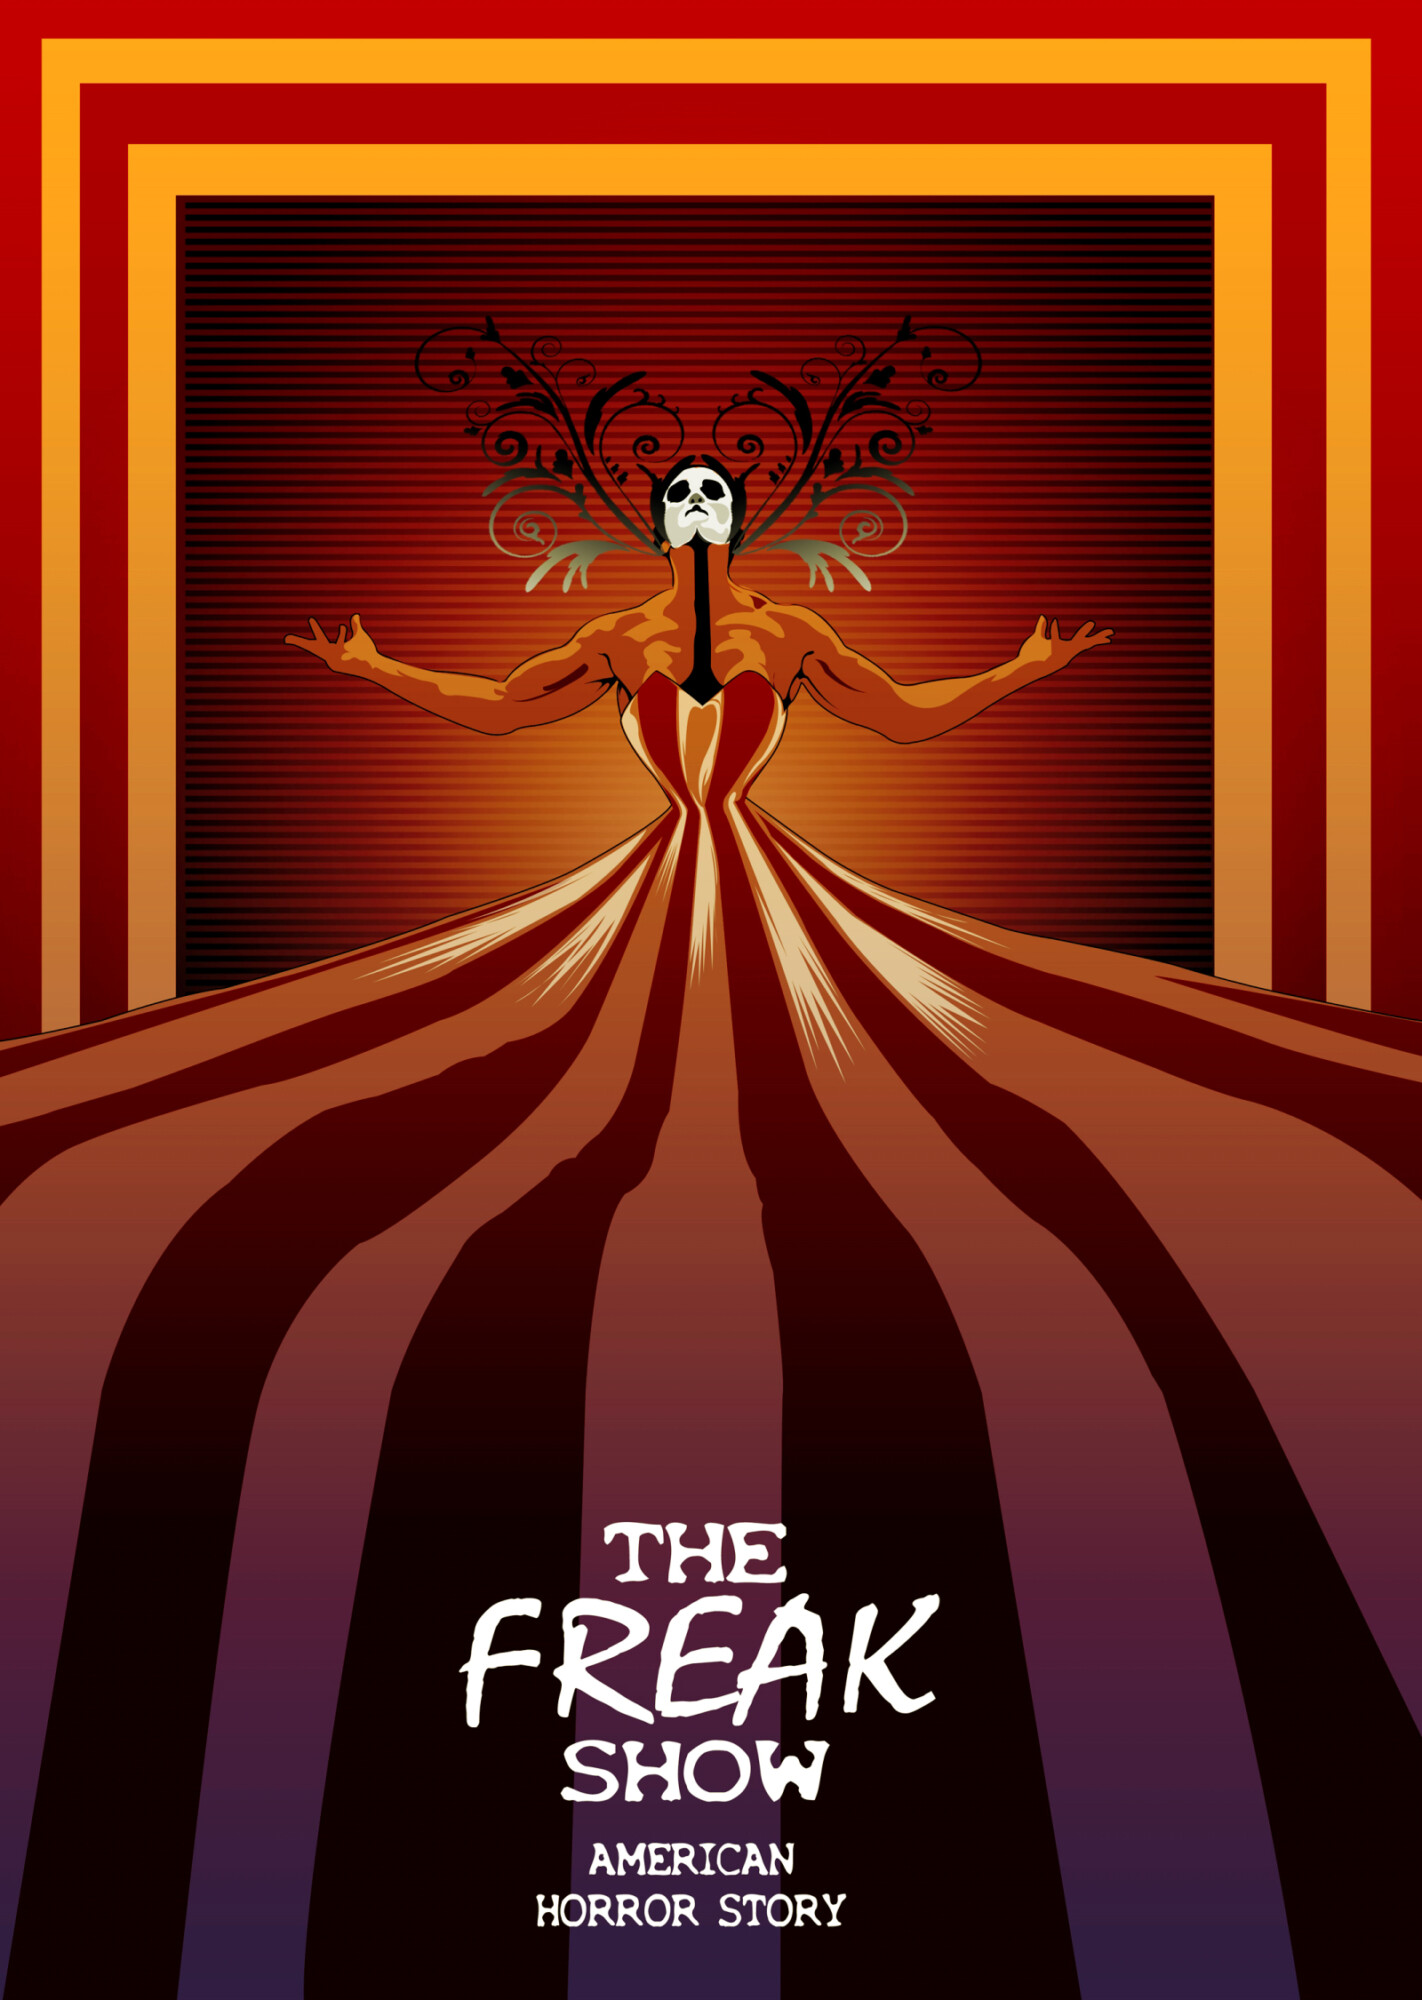 American Horror Story Freak Show Poster